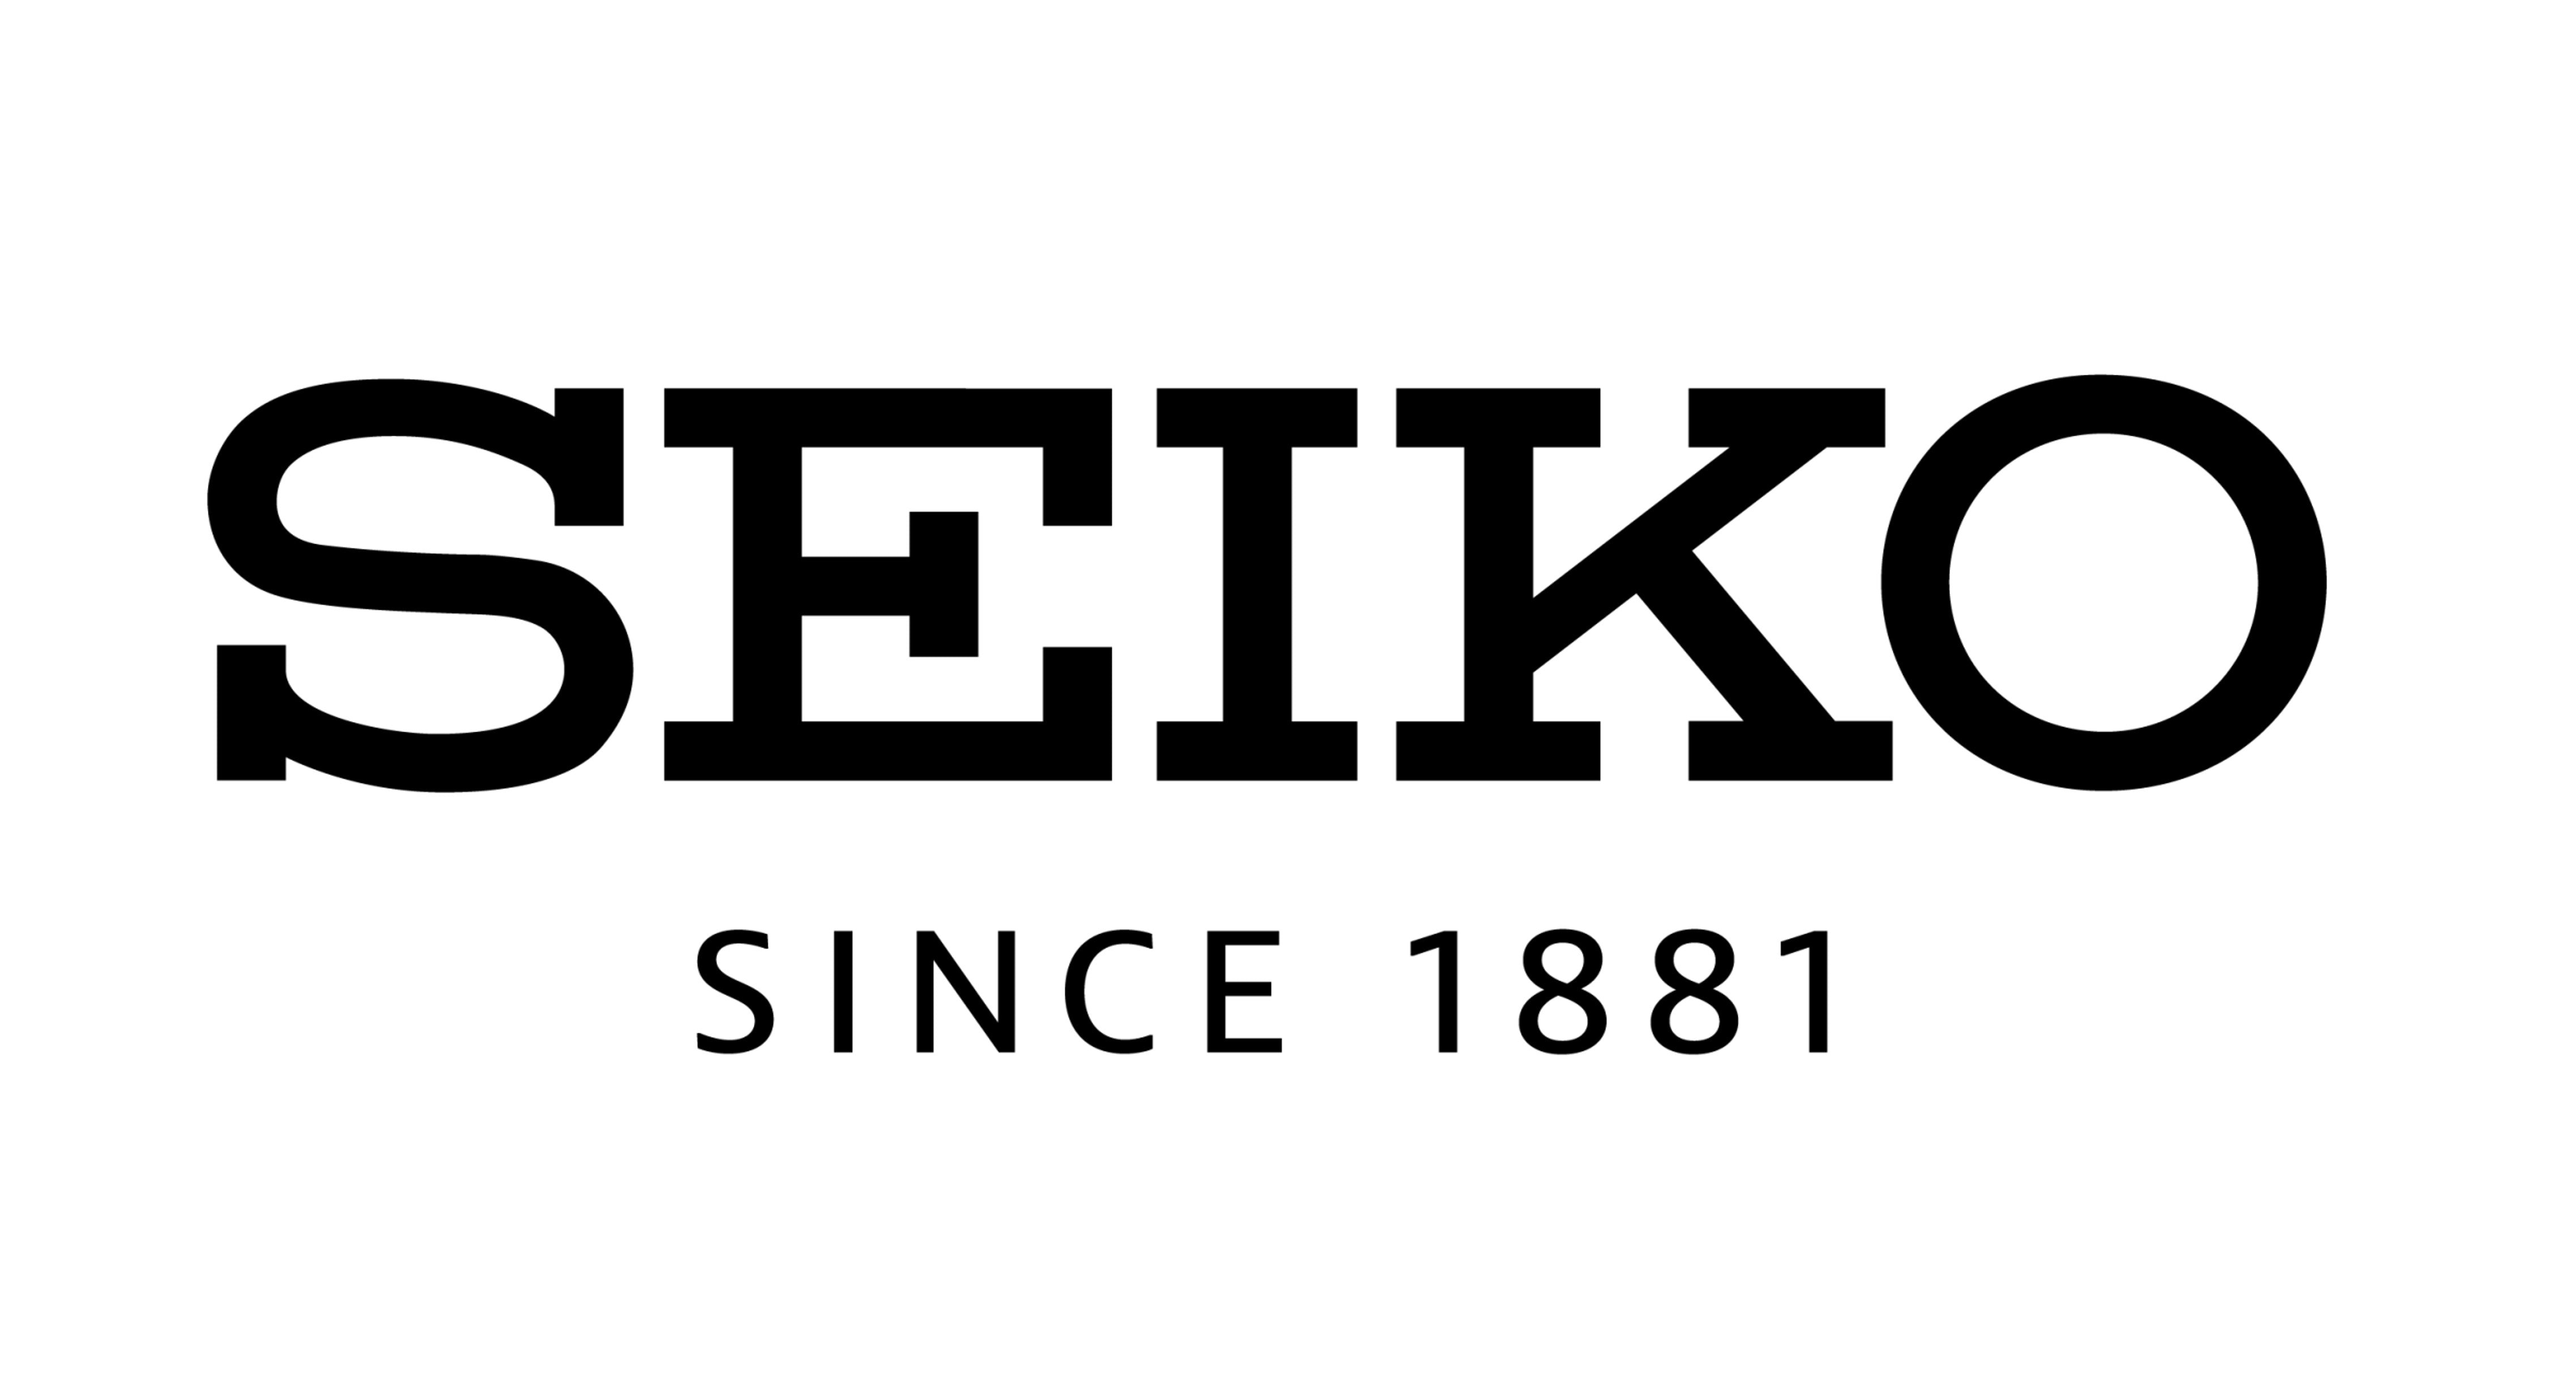 Watch Club Online - Seiko Watches